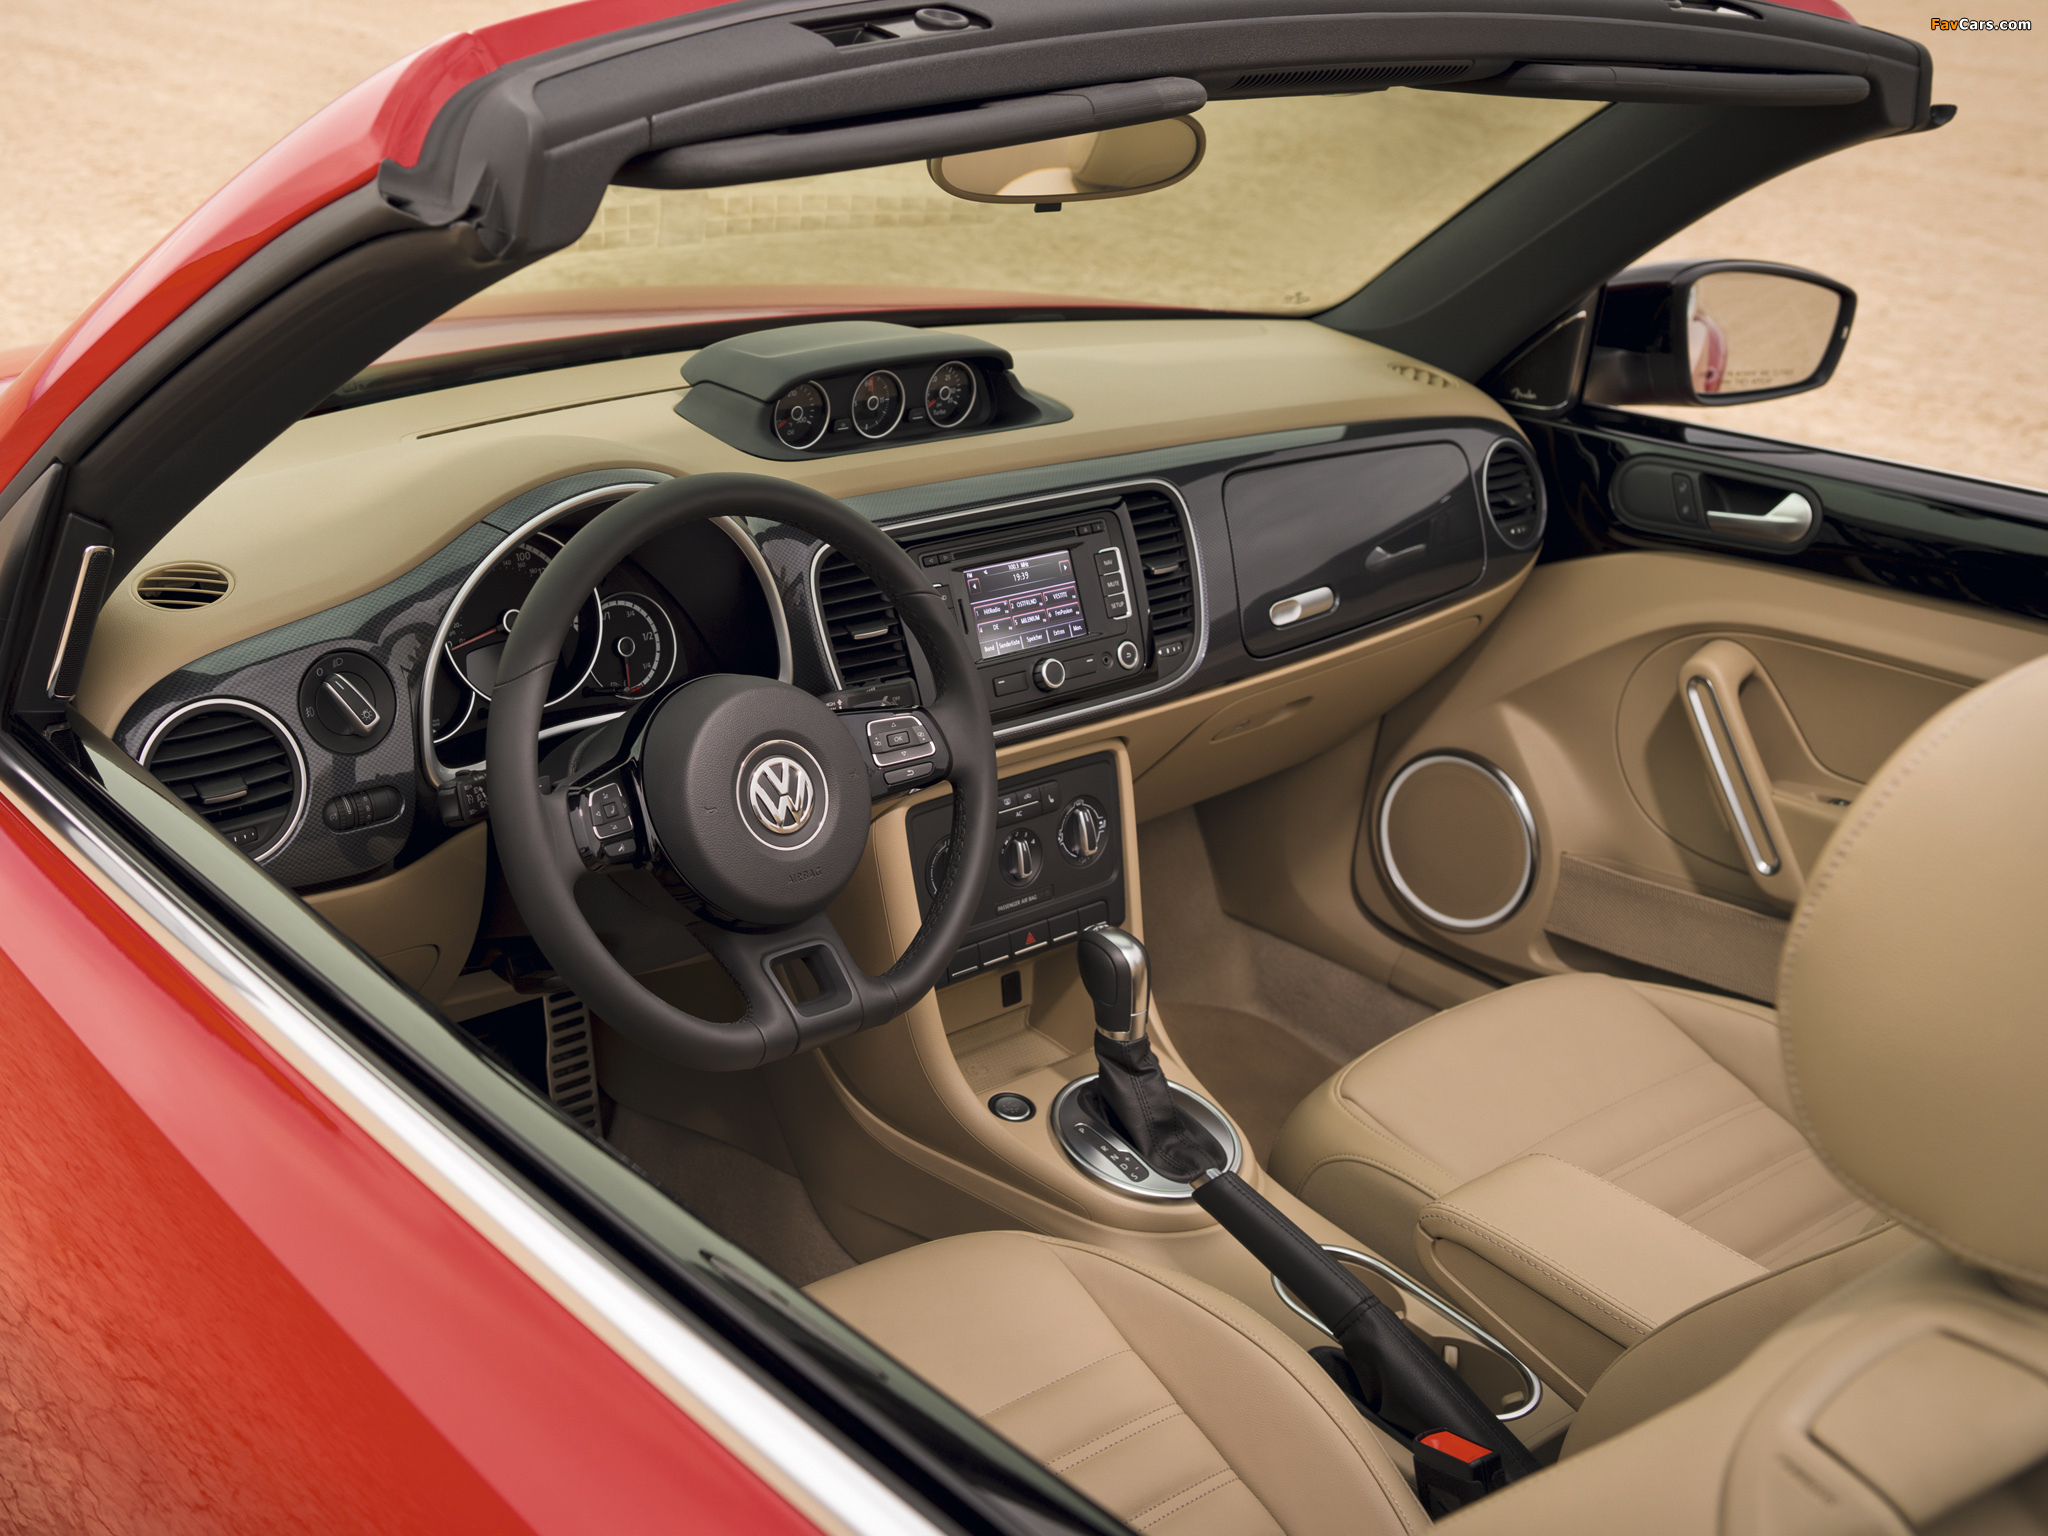 Volkswagen Beetle Convertible Turbo 2012 photos (2048 x 1536)